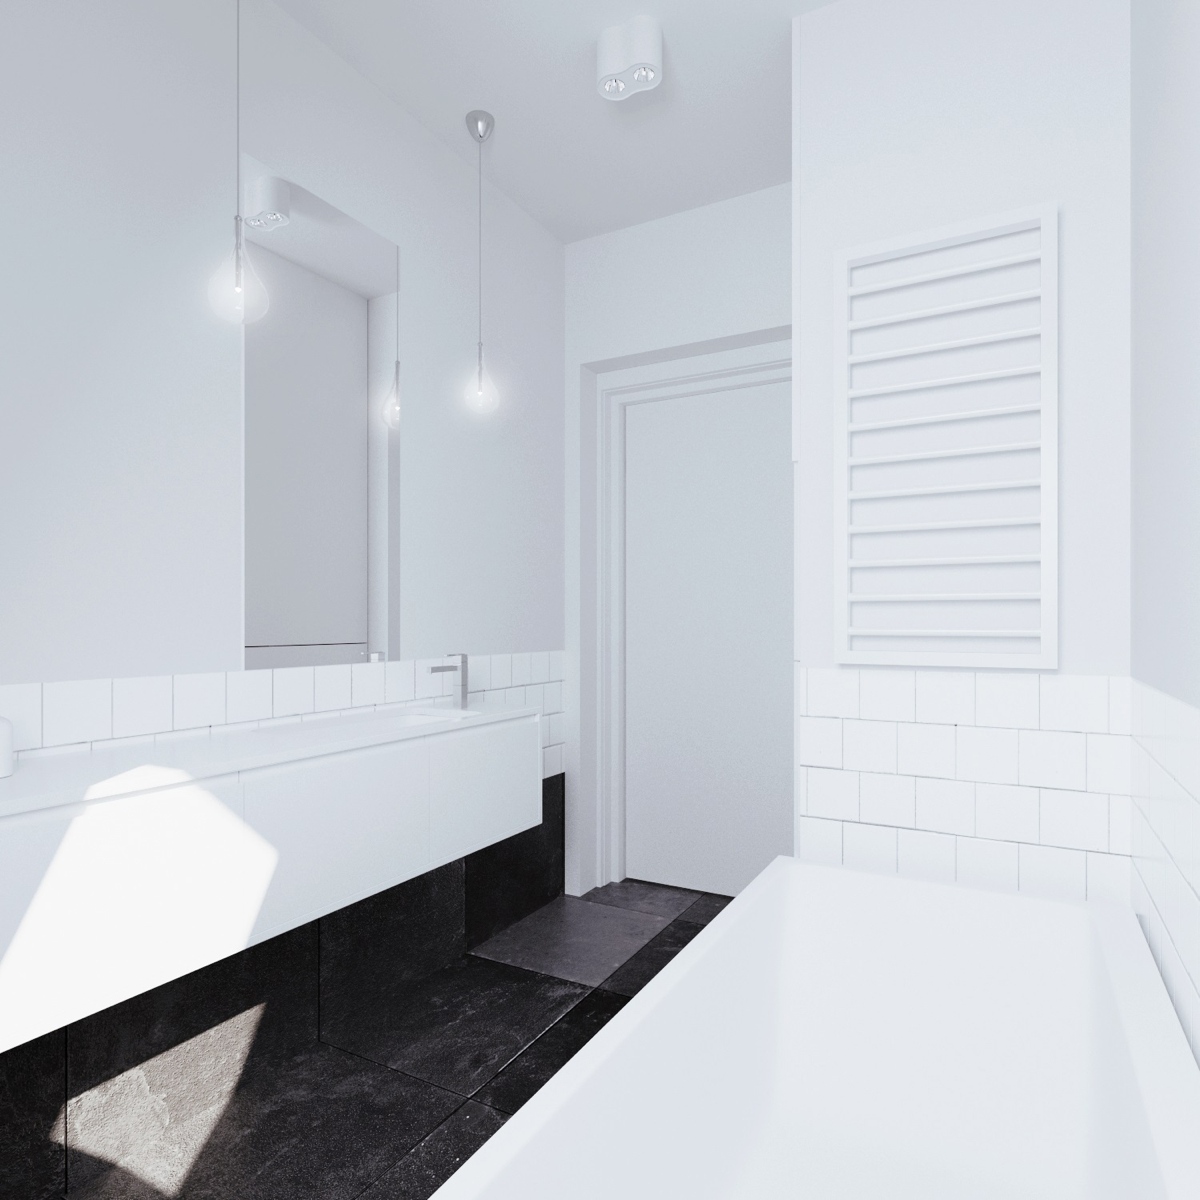 Wedo thiết kế nội thất phòng tắm thông minh cho căn hộ nhỏ tầng áp mái